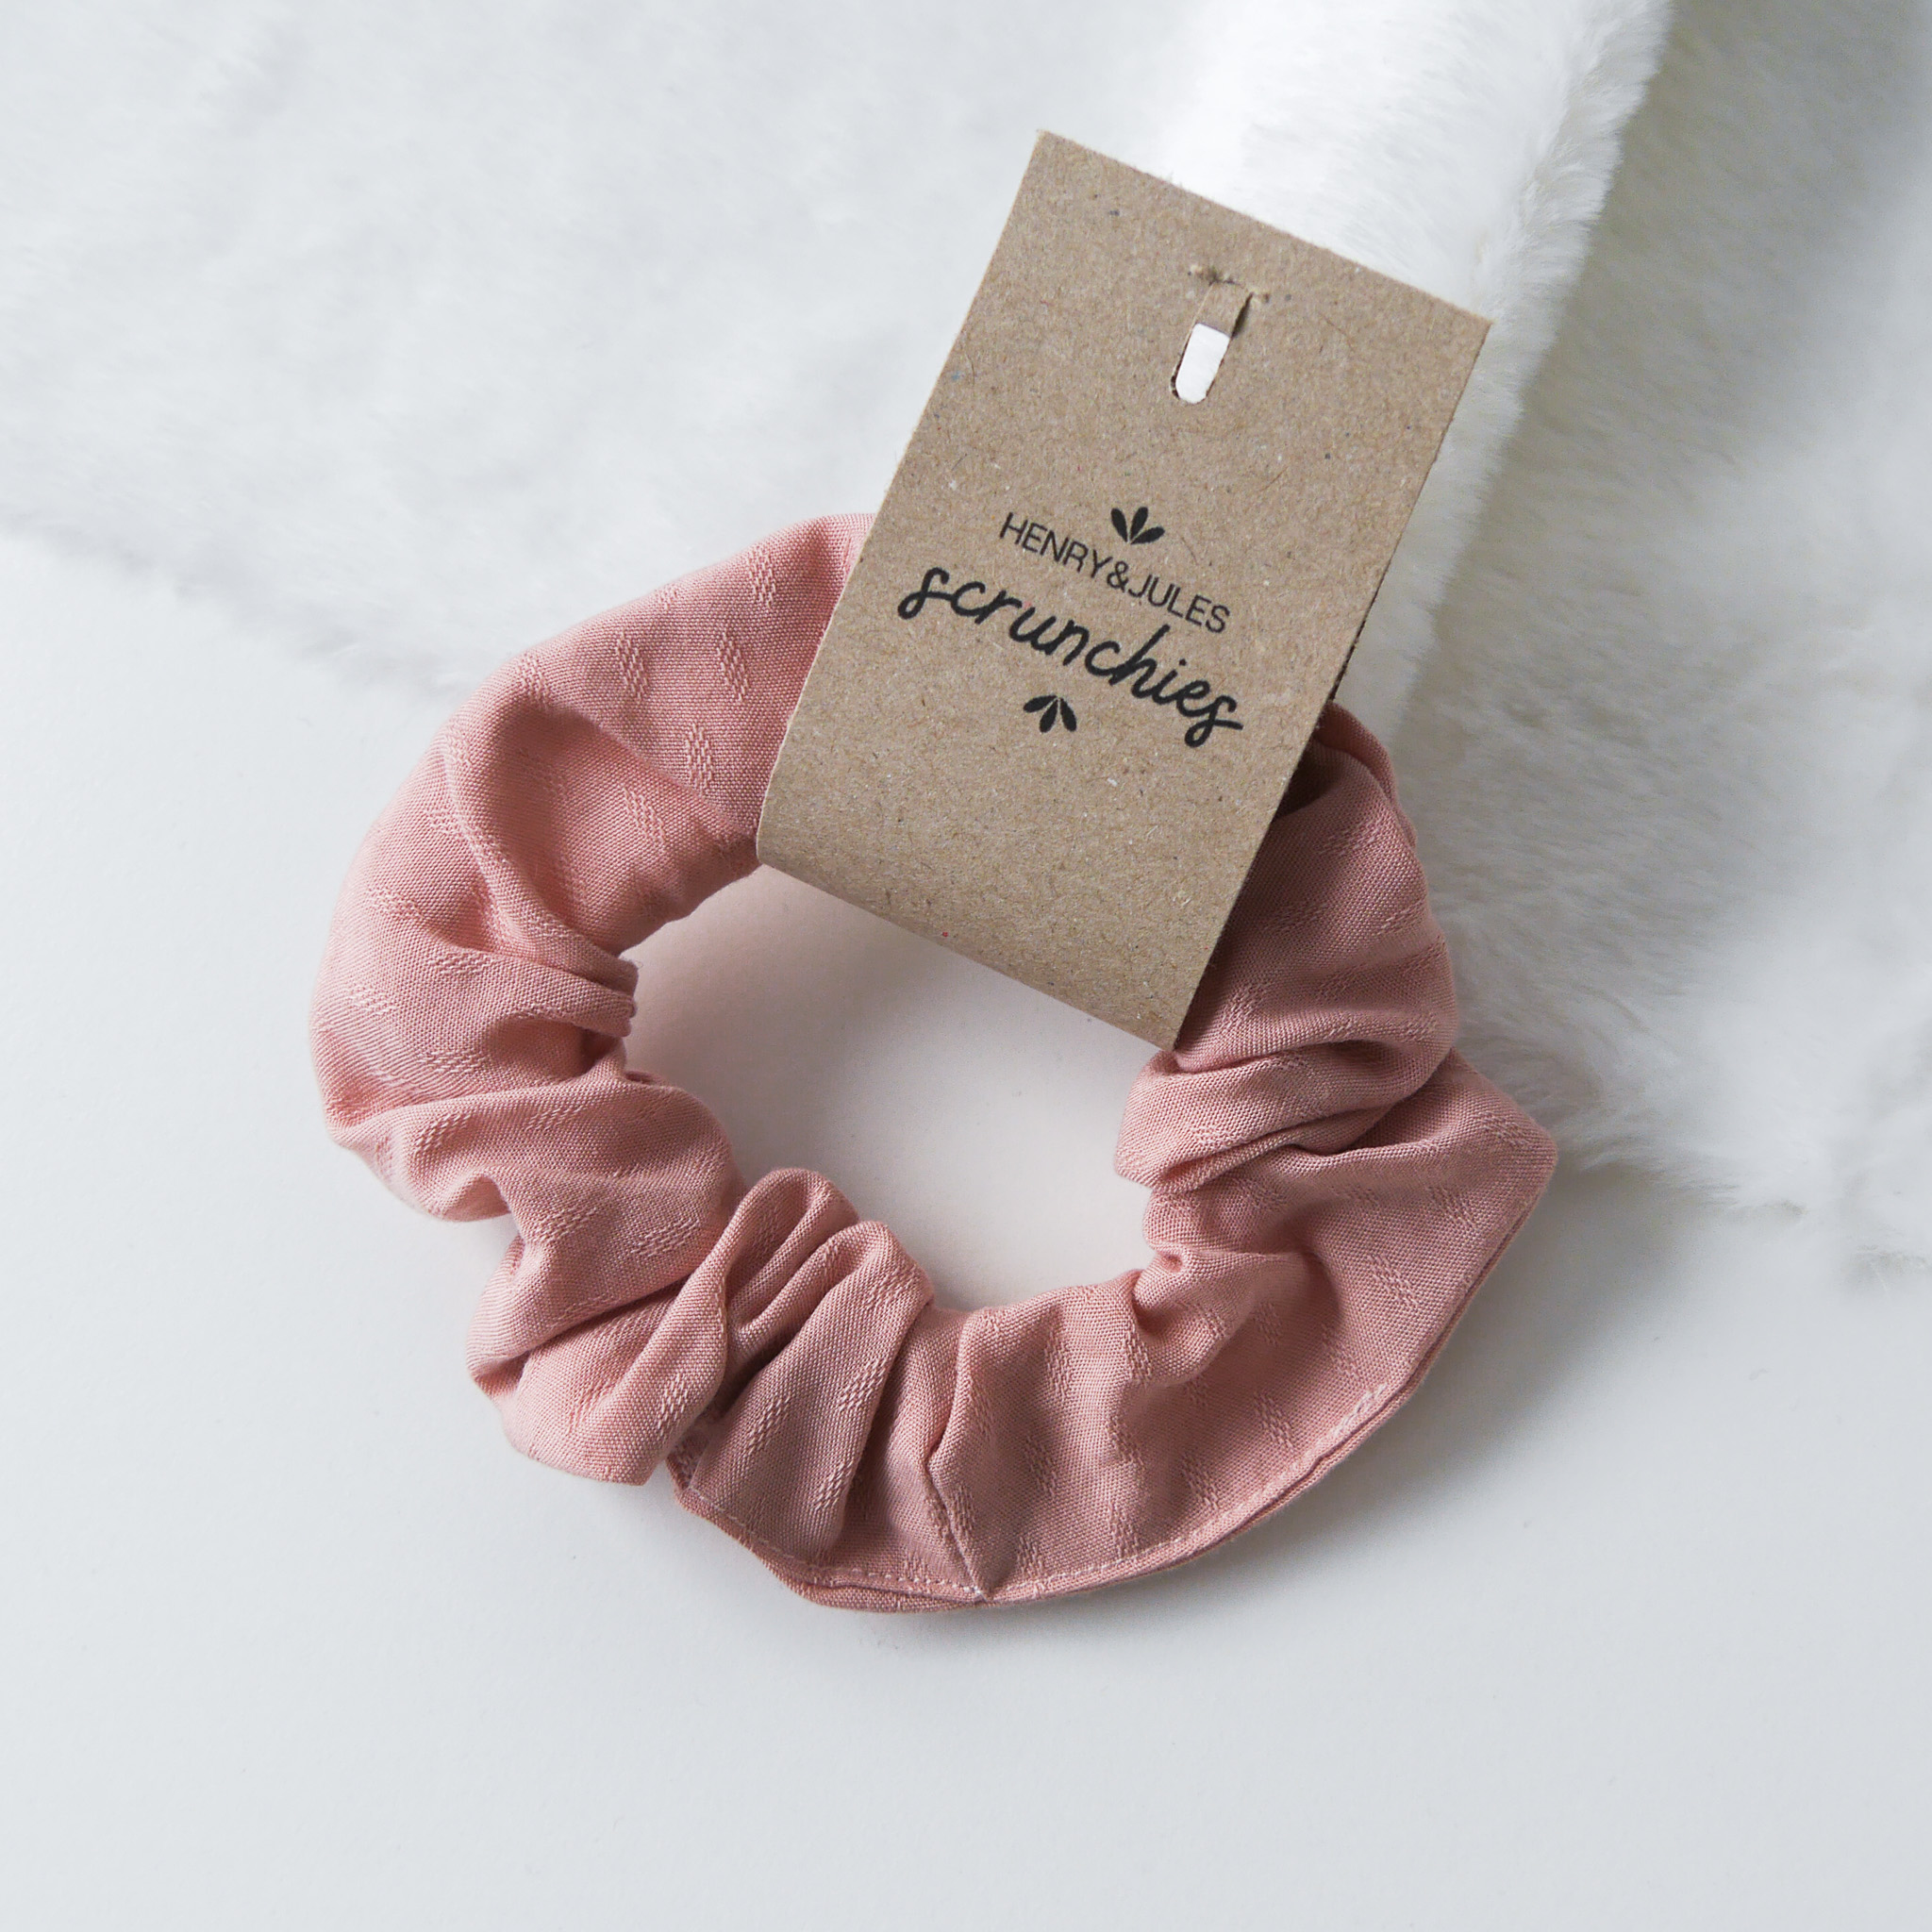 Handgemachtes Haargummi, sogenanntes Scrunchie, aus Stoff in der Farbe Rosa